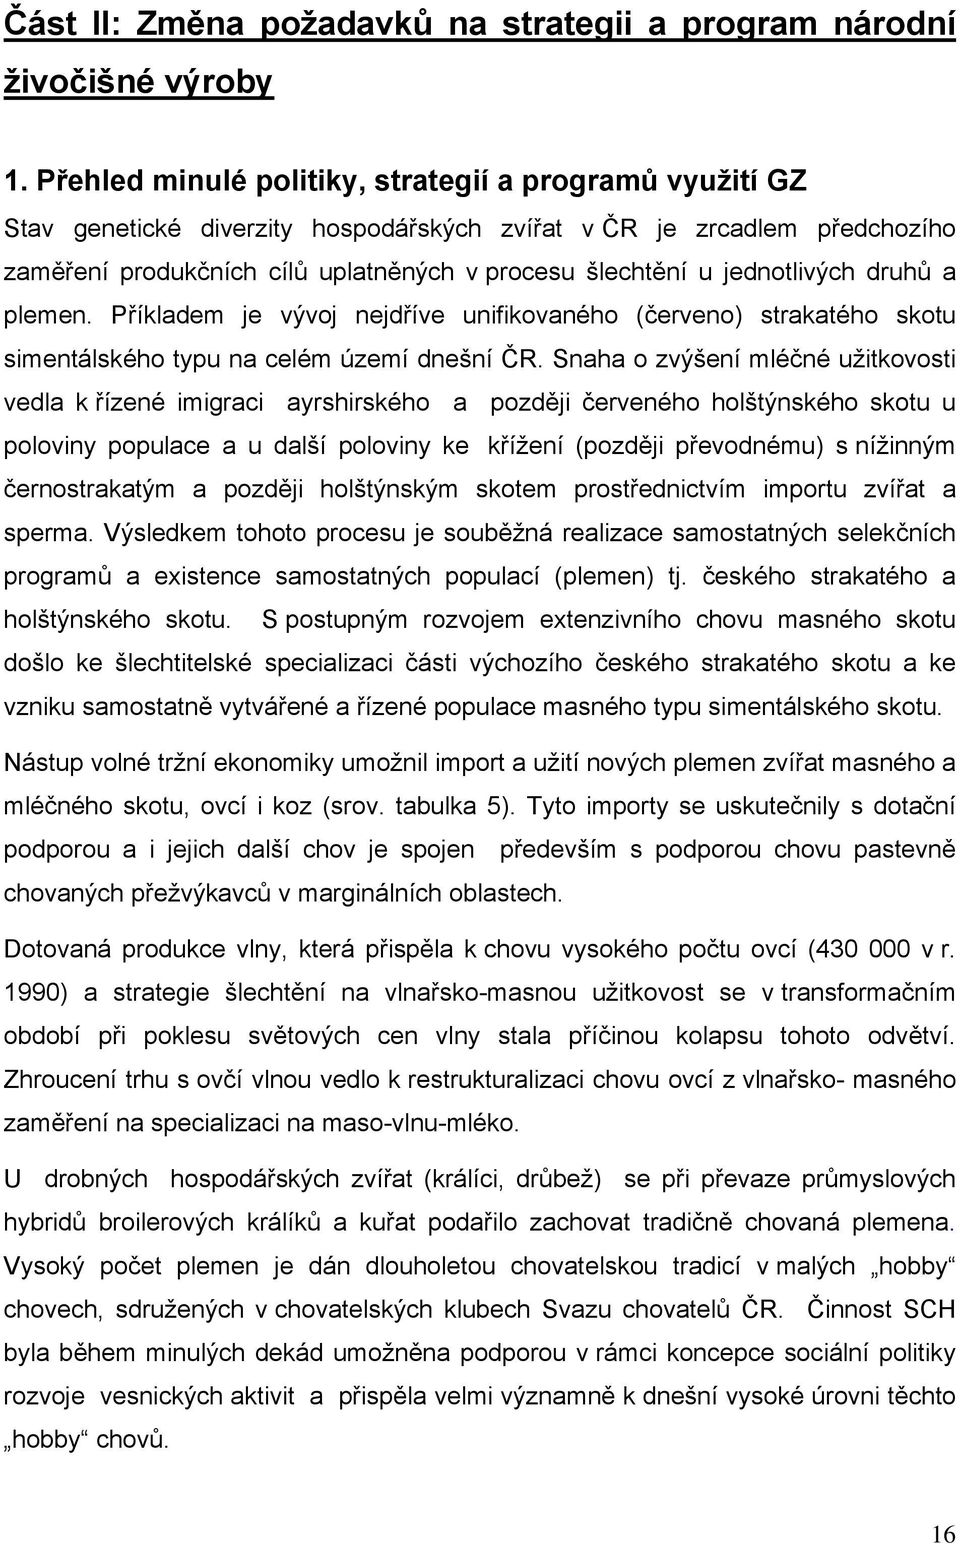 jednotlivých druhů a plemen. Příkladem je vývoj nejdříve unifikovaného (červeno) strakatého skotu simentálského typu na celém území dnešní ČR.